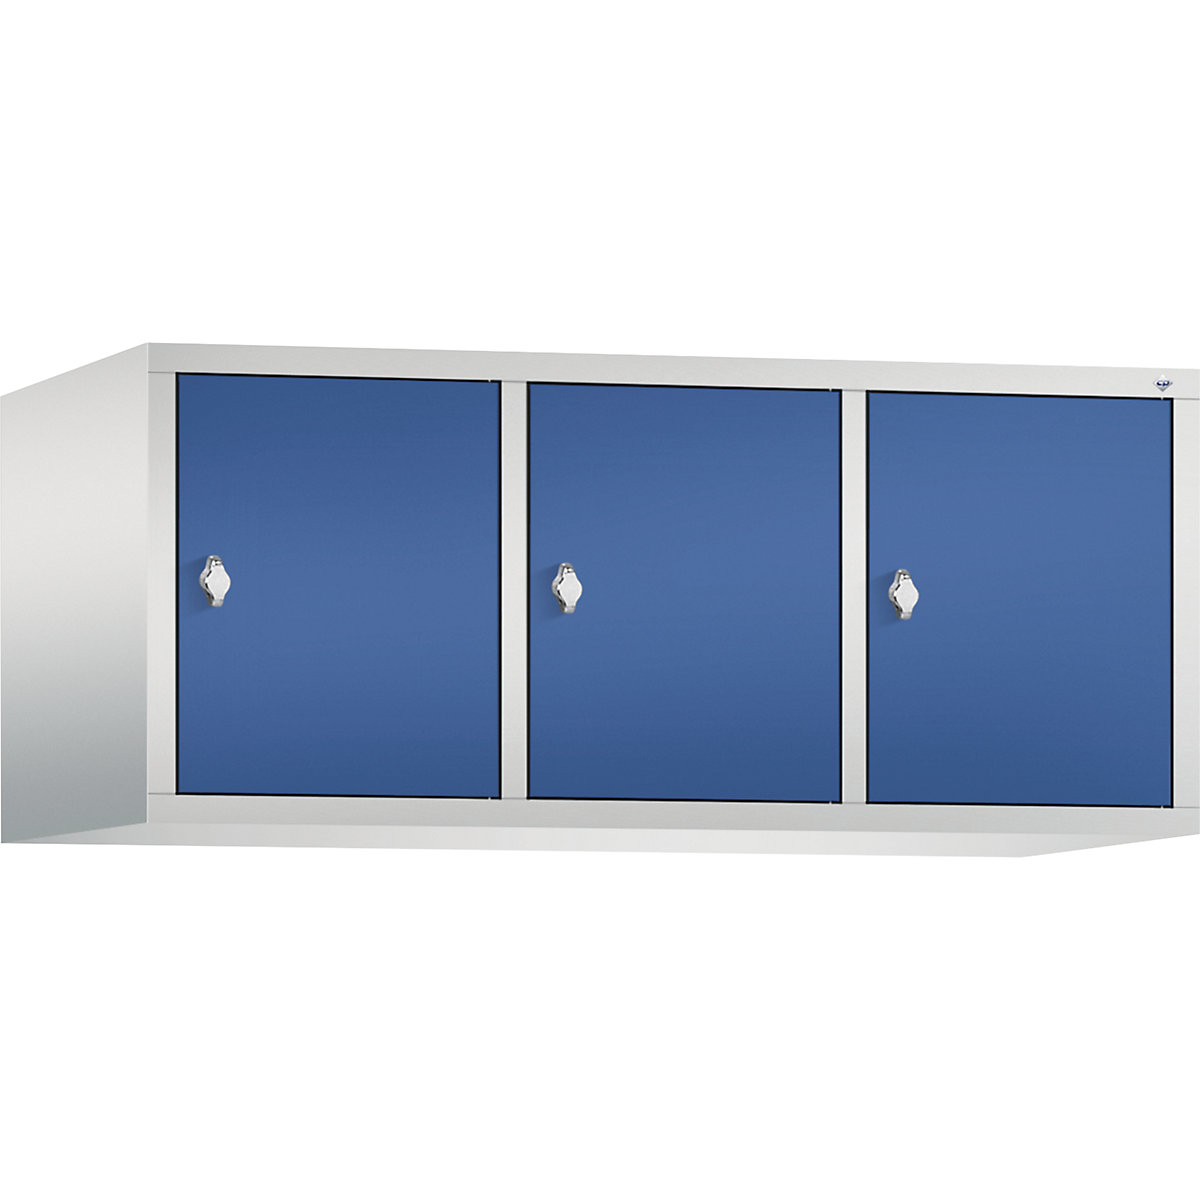 C+P – Altillo CLASSIC, 3 compartimentos, anchura de compartimento 400 mm, gris luminoso / azul genciana